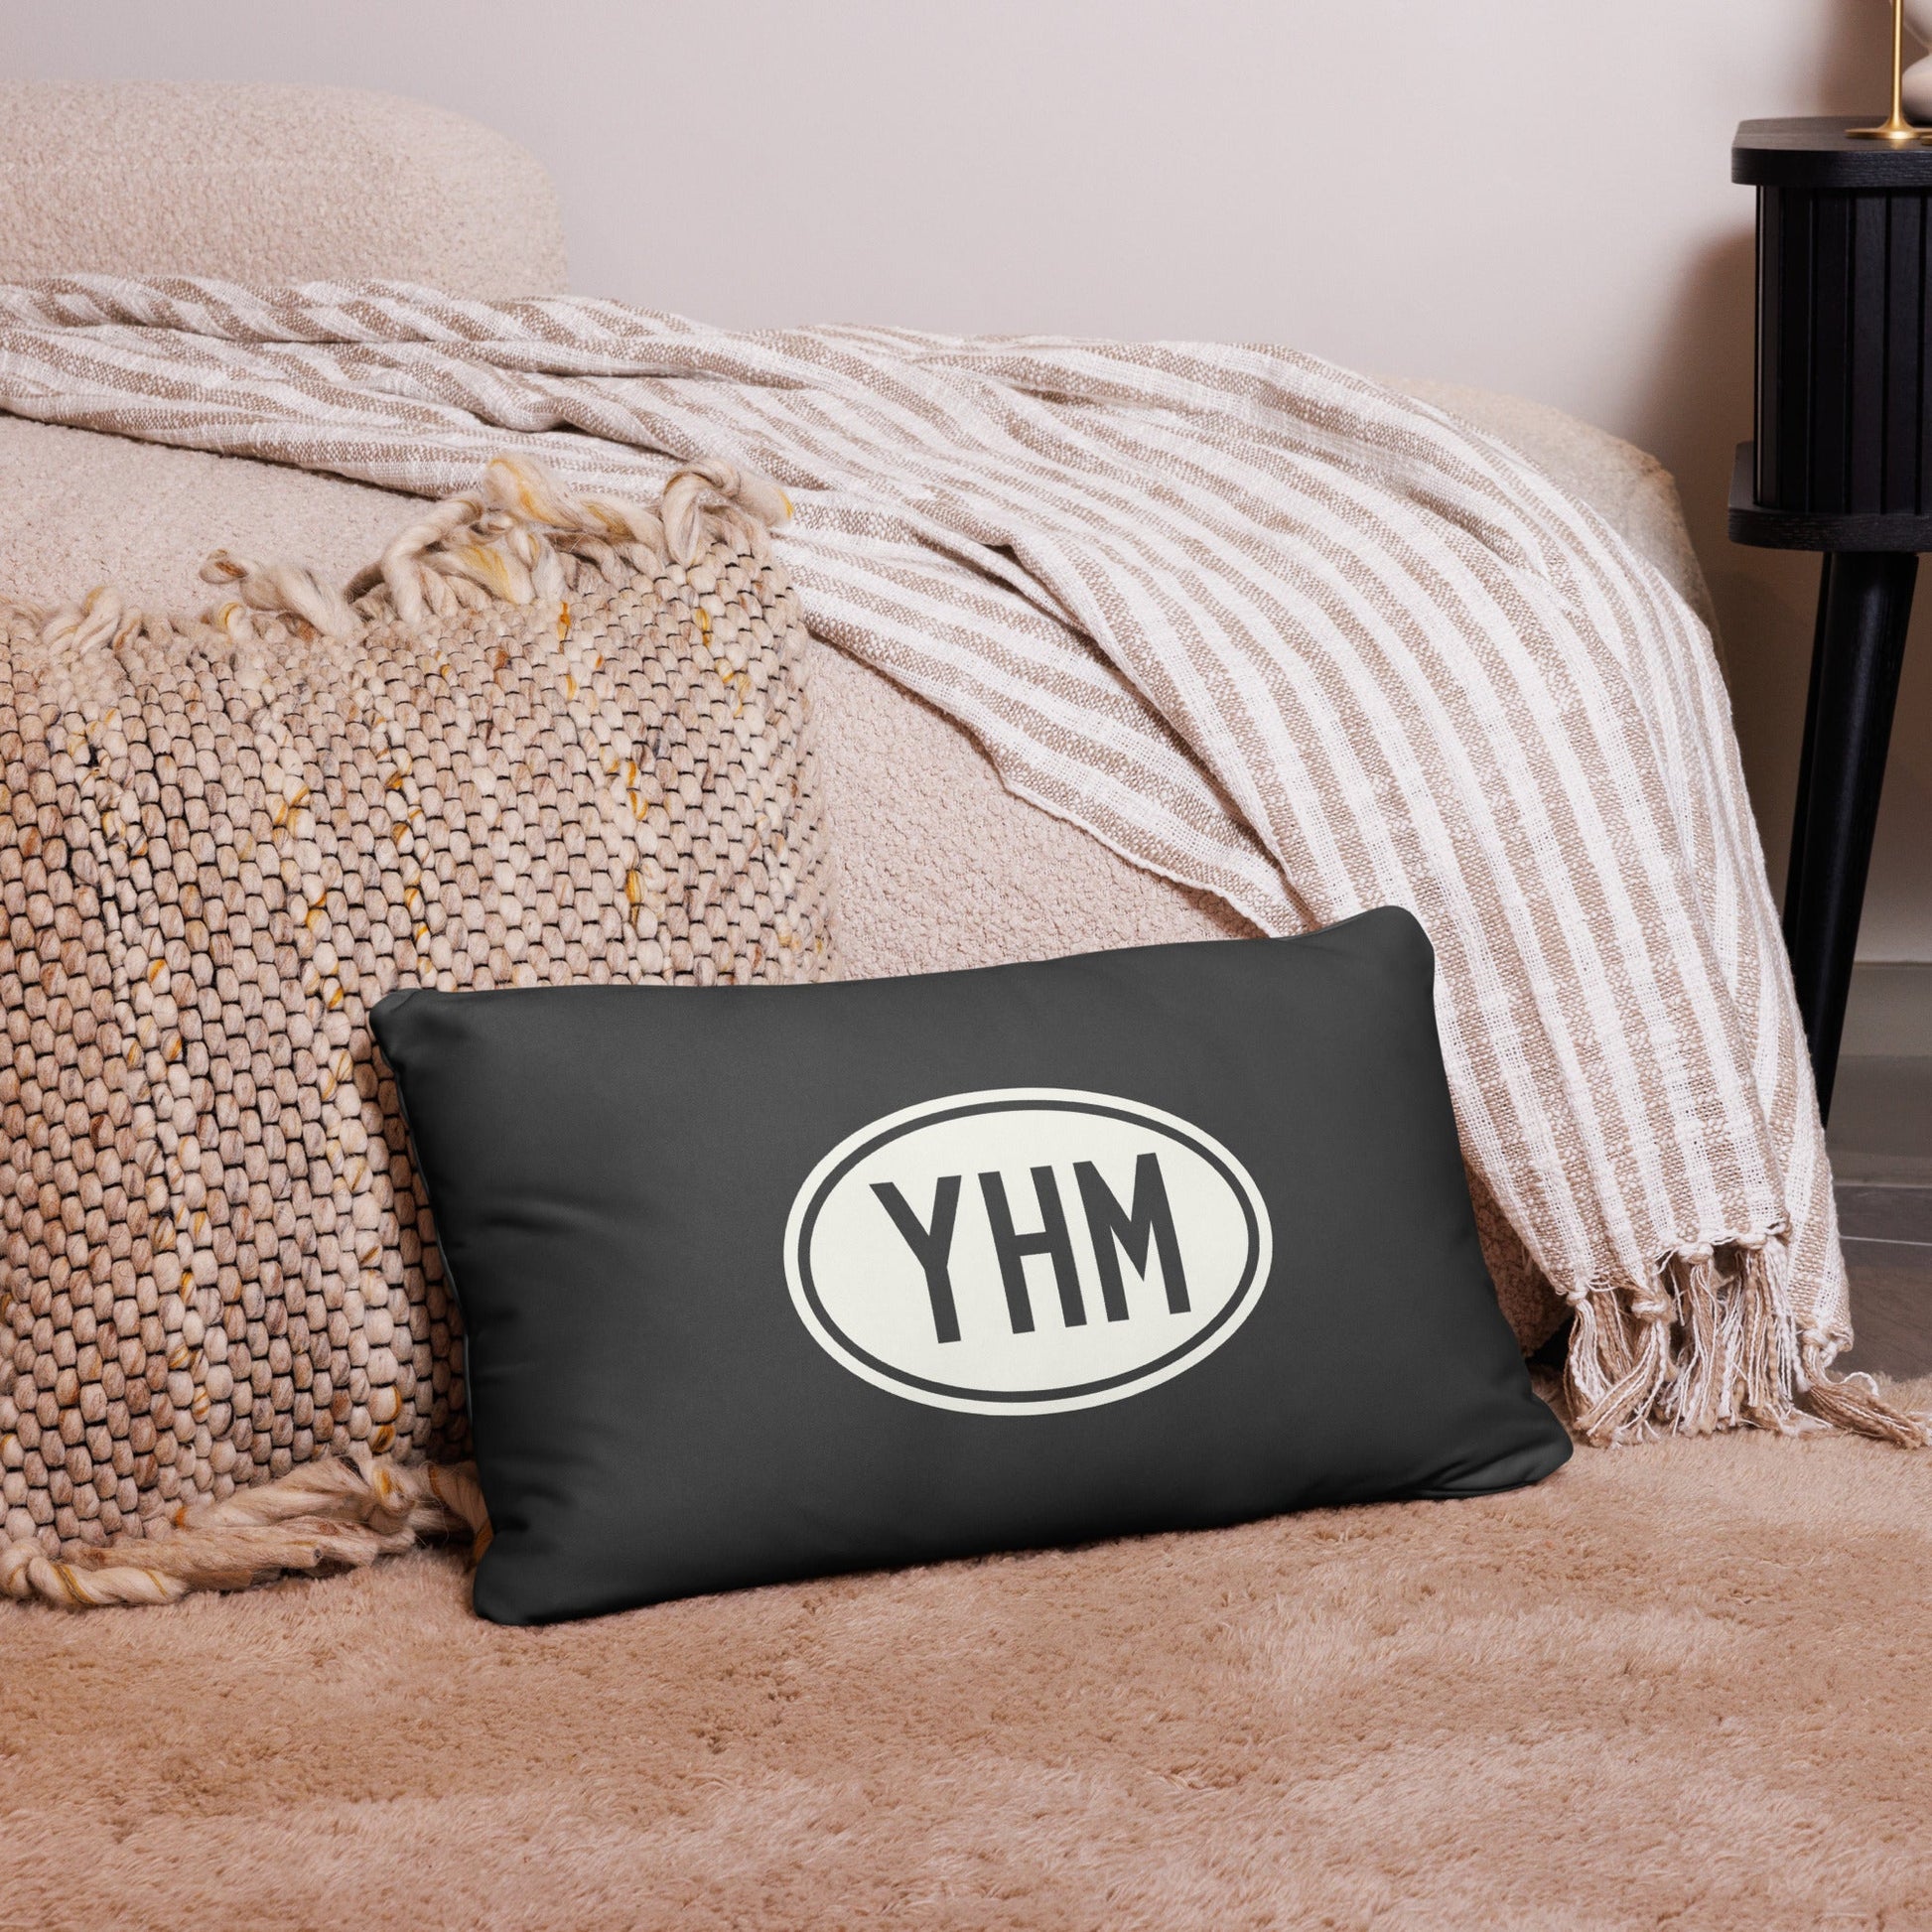 Unique Travel Gift Throw Pillow - White Oval • ATL Atlanta • YHM Designs - Image 05